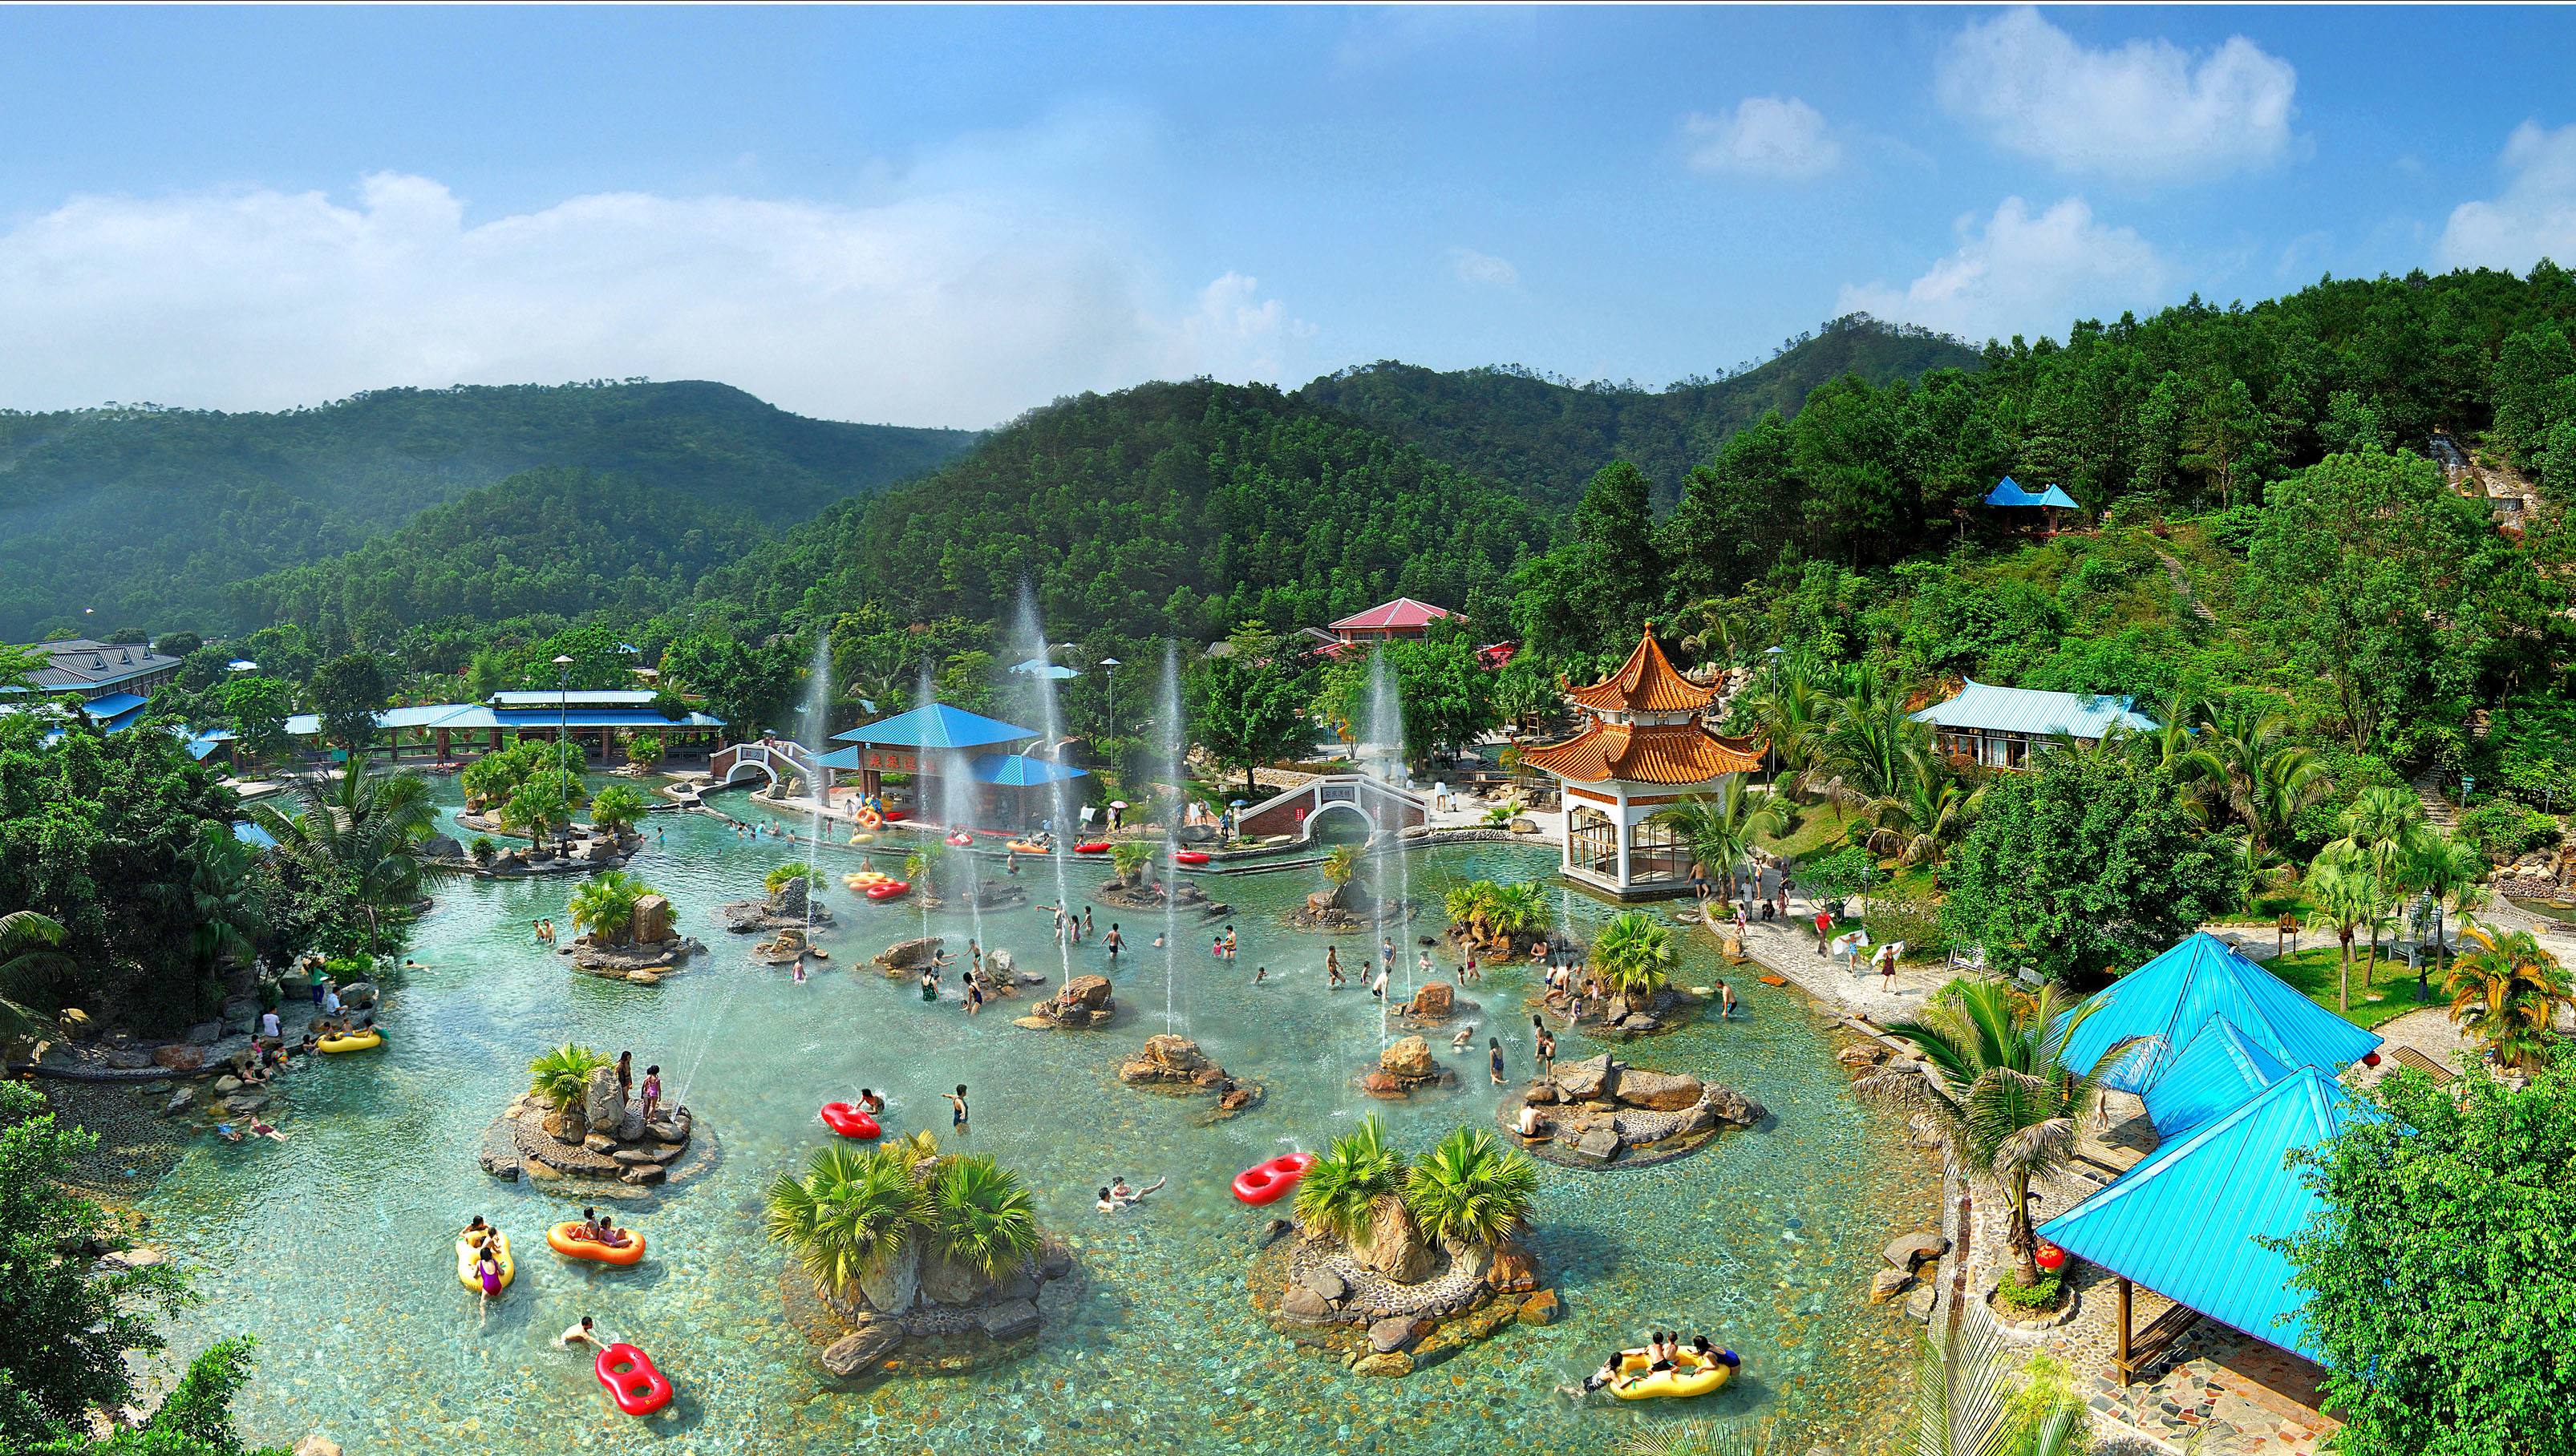 这里有天然氧吧般的度假天堂,这里就是三江森林温泉,这个假期,一起来